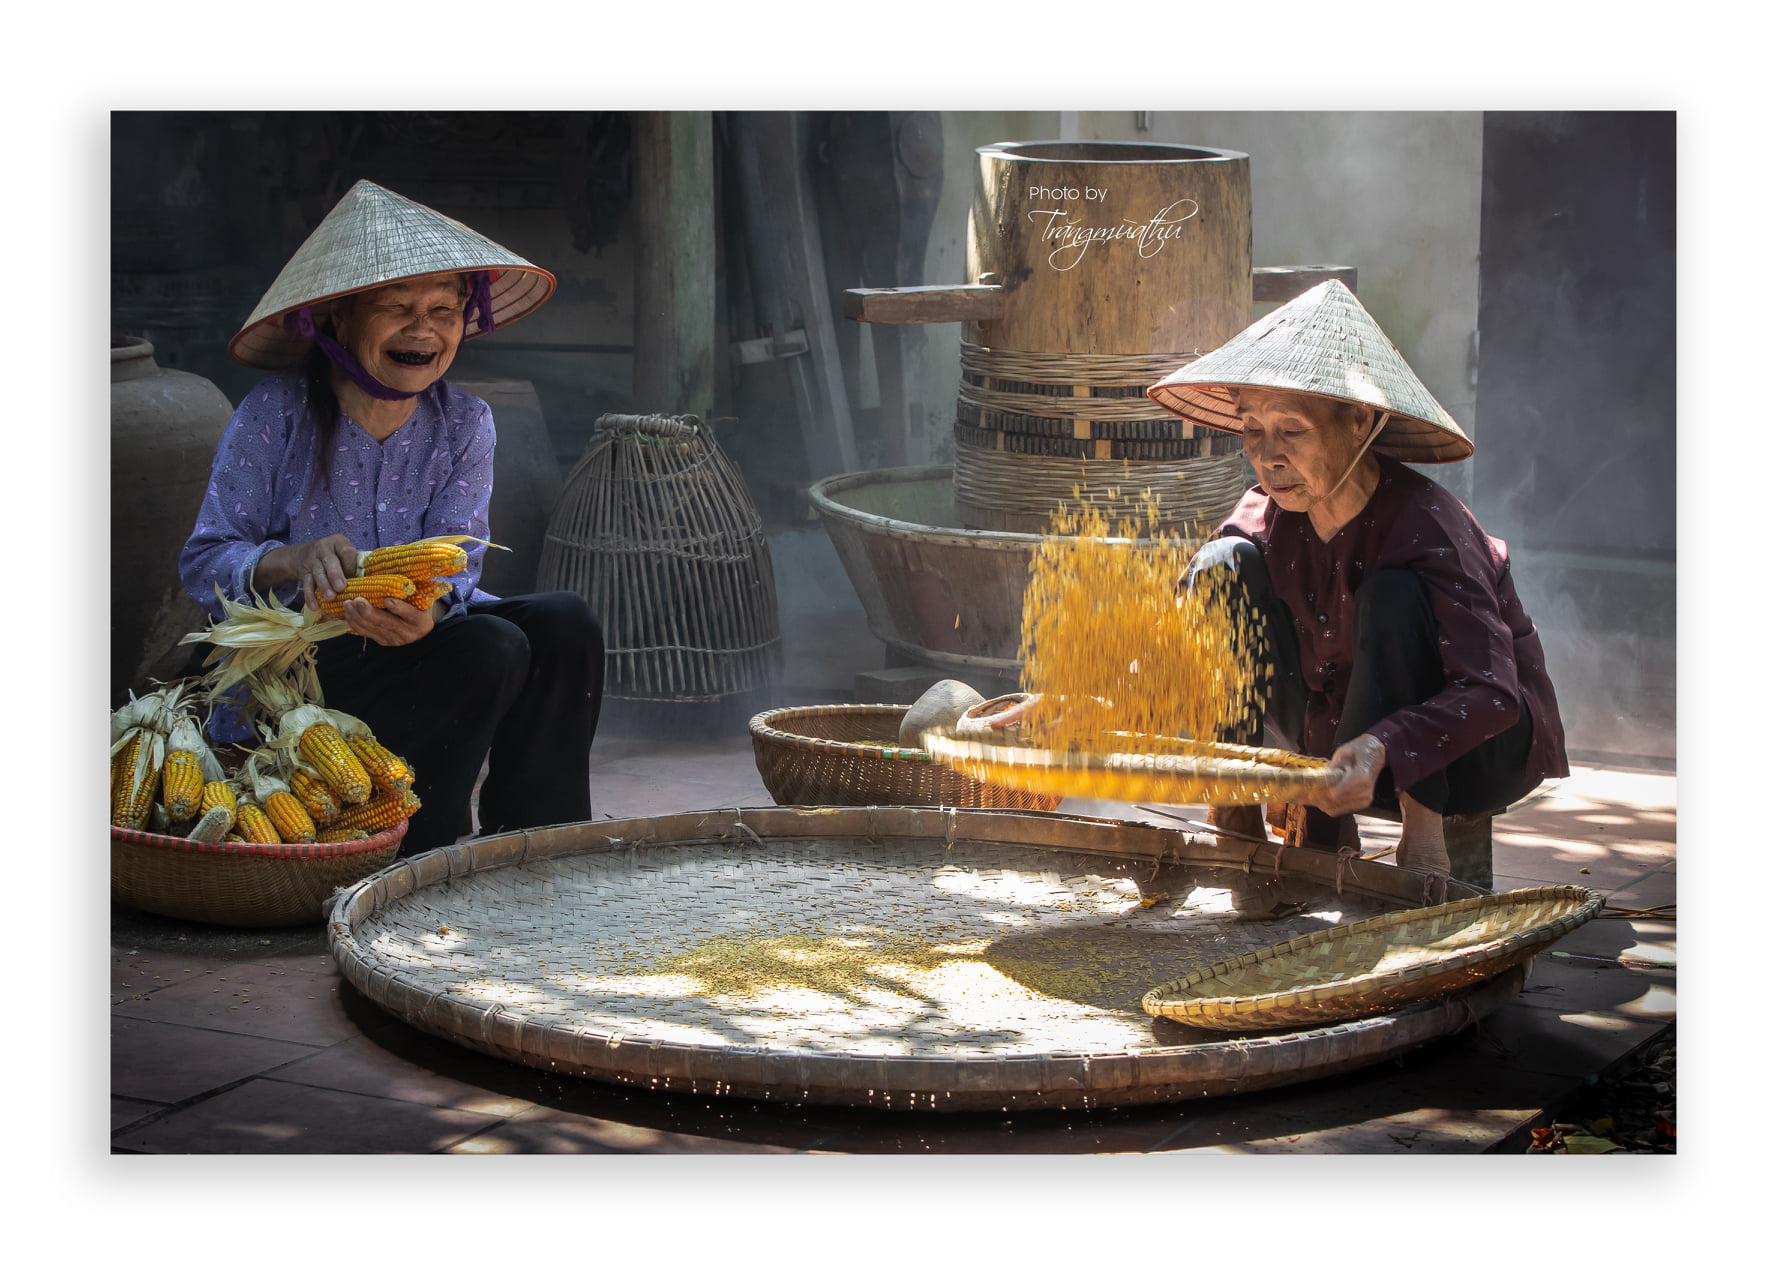 Hình Ảnh Làng Quê Việt Nam đem lại cho bạn những trải nghiệm bình yên và dịu dàng. Hãy thưởng thức những bức ảnh tuyệt đẹp về cuộc sống và văn hoá của người dân Việt Nam. Việc khám phá những cảnh đẹp này là một trải nghiệm tuyệt vời mà bạn sẽ không muốn bỏ lỡ.